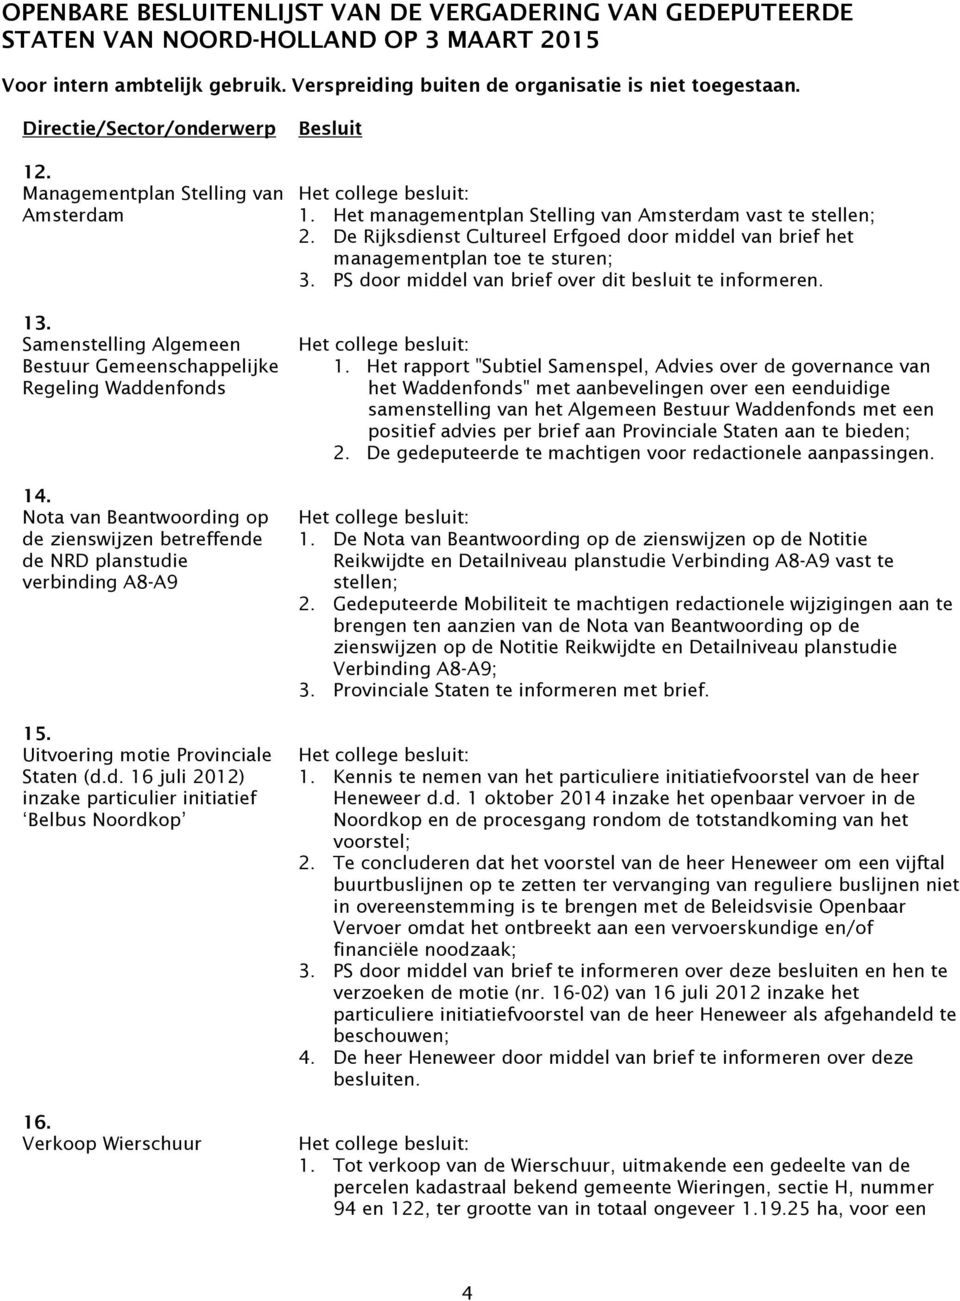 Nota van Beantwoording op de zienswijzen betreffende de NRD planstudie verbinding A8-A9 15. Uitvoering motie Provinciale Staten (d.d. 16 juli 2012) inzake particulier initiatief Belbus Noordkop 16.